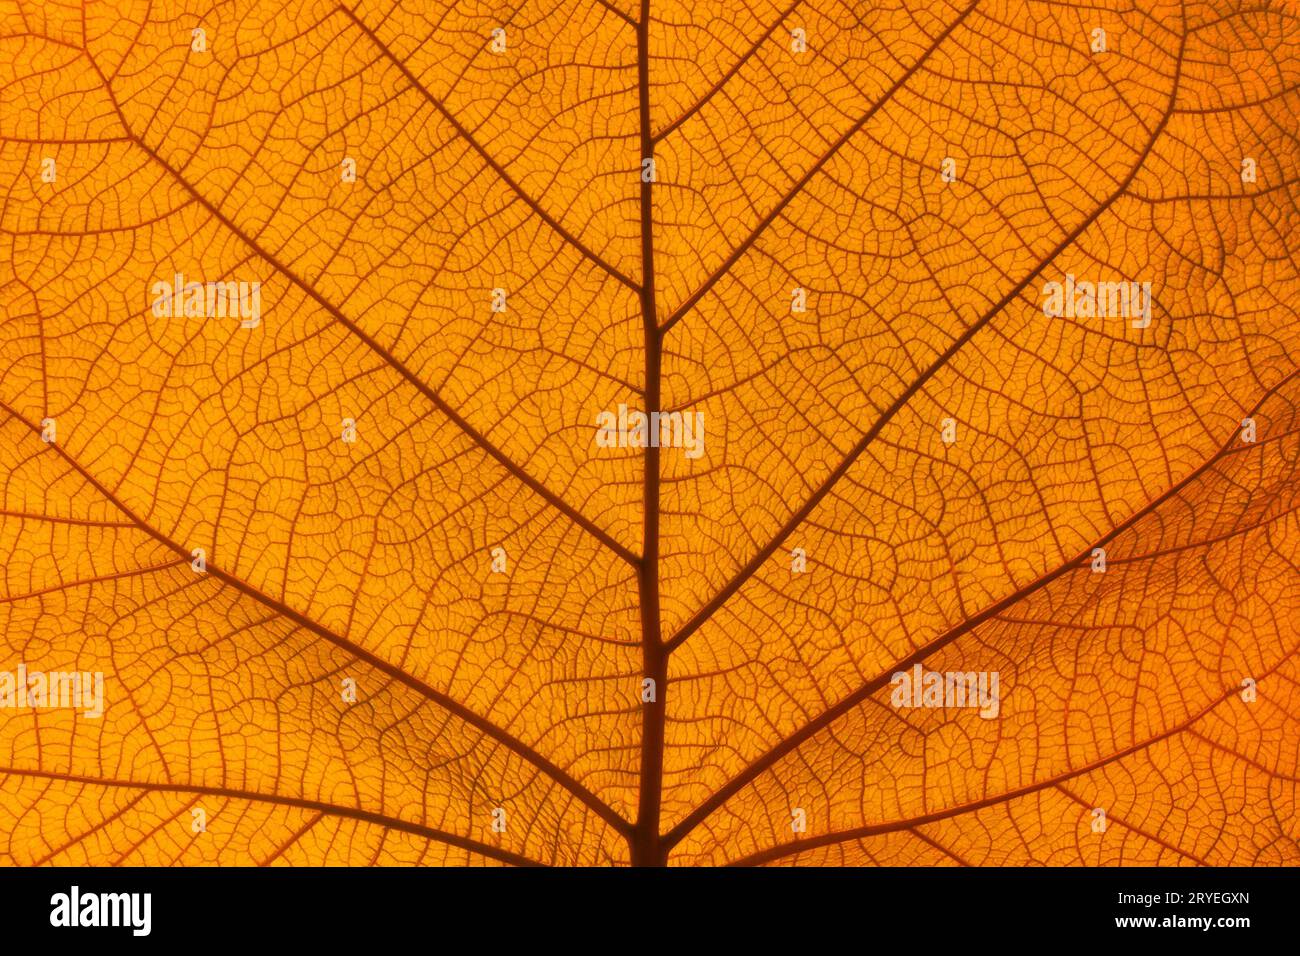 Extrem nahe Textur von Orangenblattvenen Stockfoto